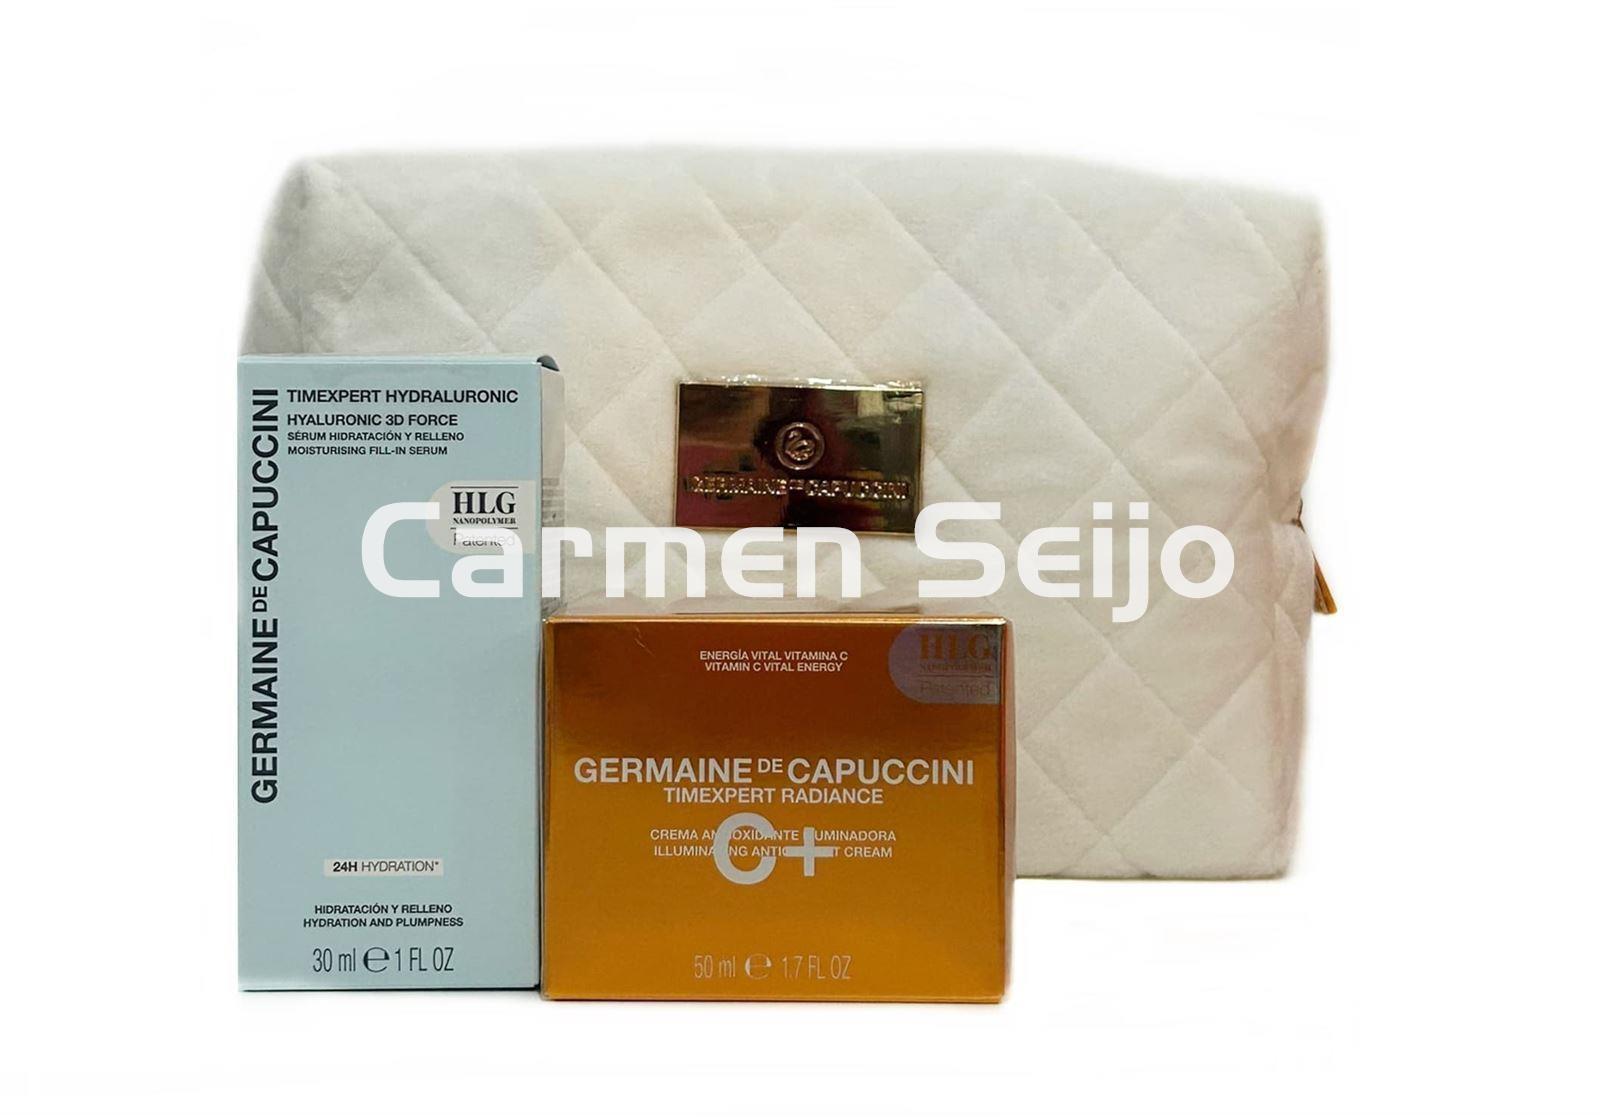 Germaine de Capuccini Pack Crema Vitamina C Timexpert Radiance C+ - Imagen 1